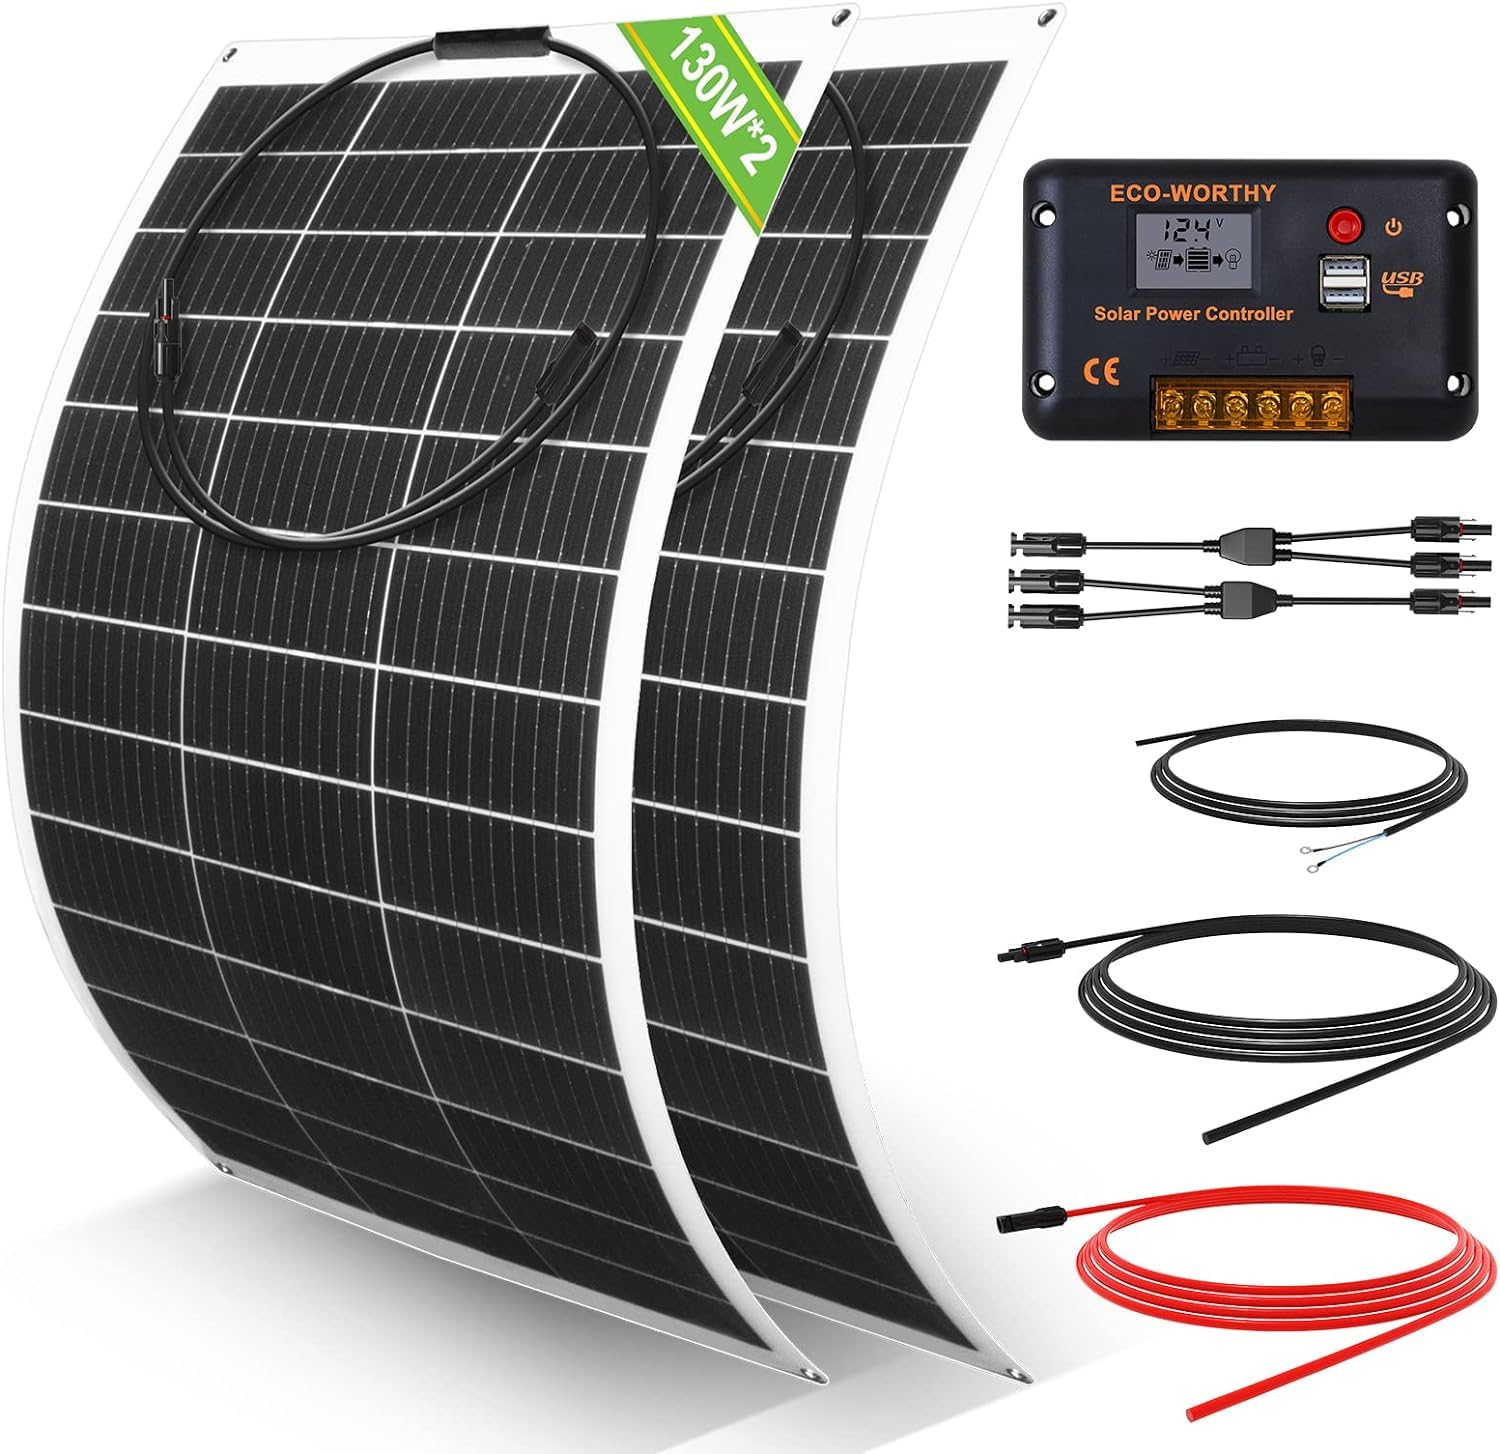 ECO-WORTHY 260 Watt 12 Volt flexibles Solarpanel Kit netzunabhängig Off Grid: 2 Stücke130W Solarpanel + 30A LCD-Display PWM-Laderegler + 5m Solarkabel für Wohnwagen, Wohnmobil, Boot, Kabine, Anhänger